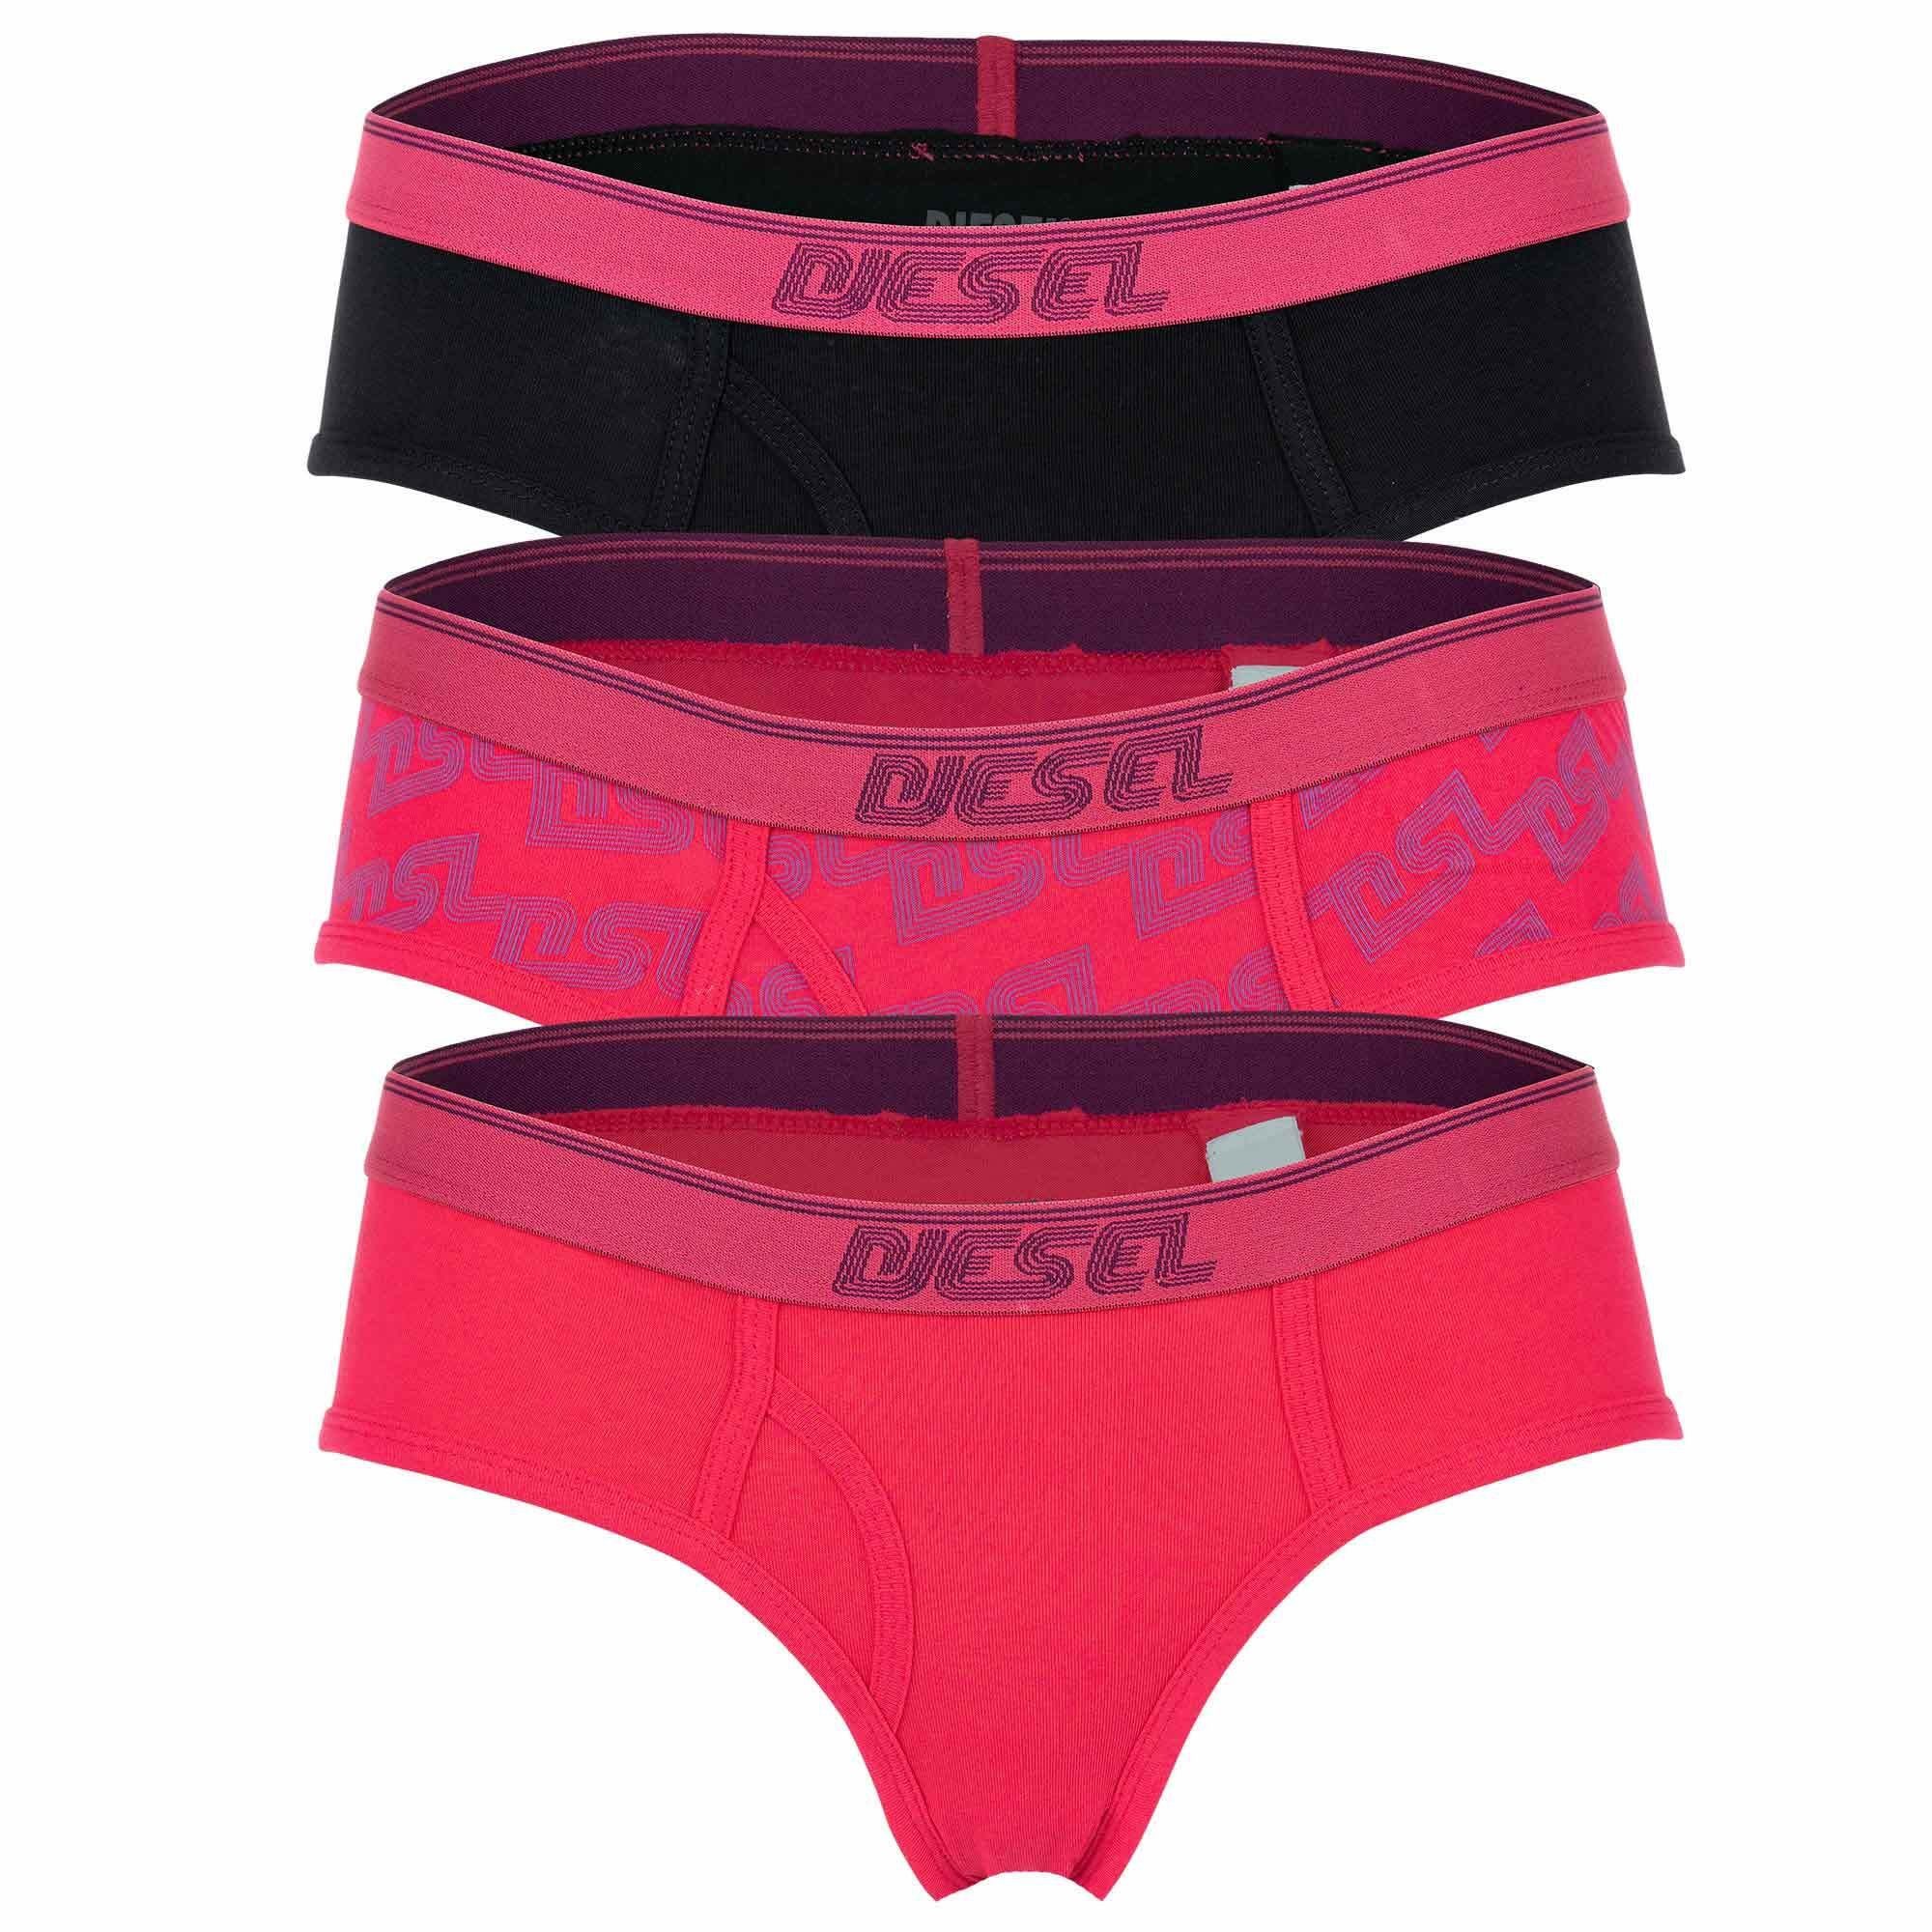 UFPN Pink/Schwarz/Blau - OXYS-THREEPACK 3er Slips, Slip Pack Damen Diesel